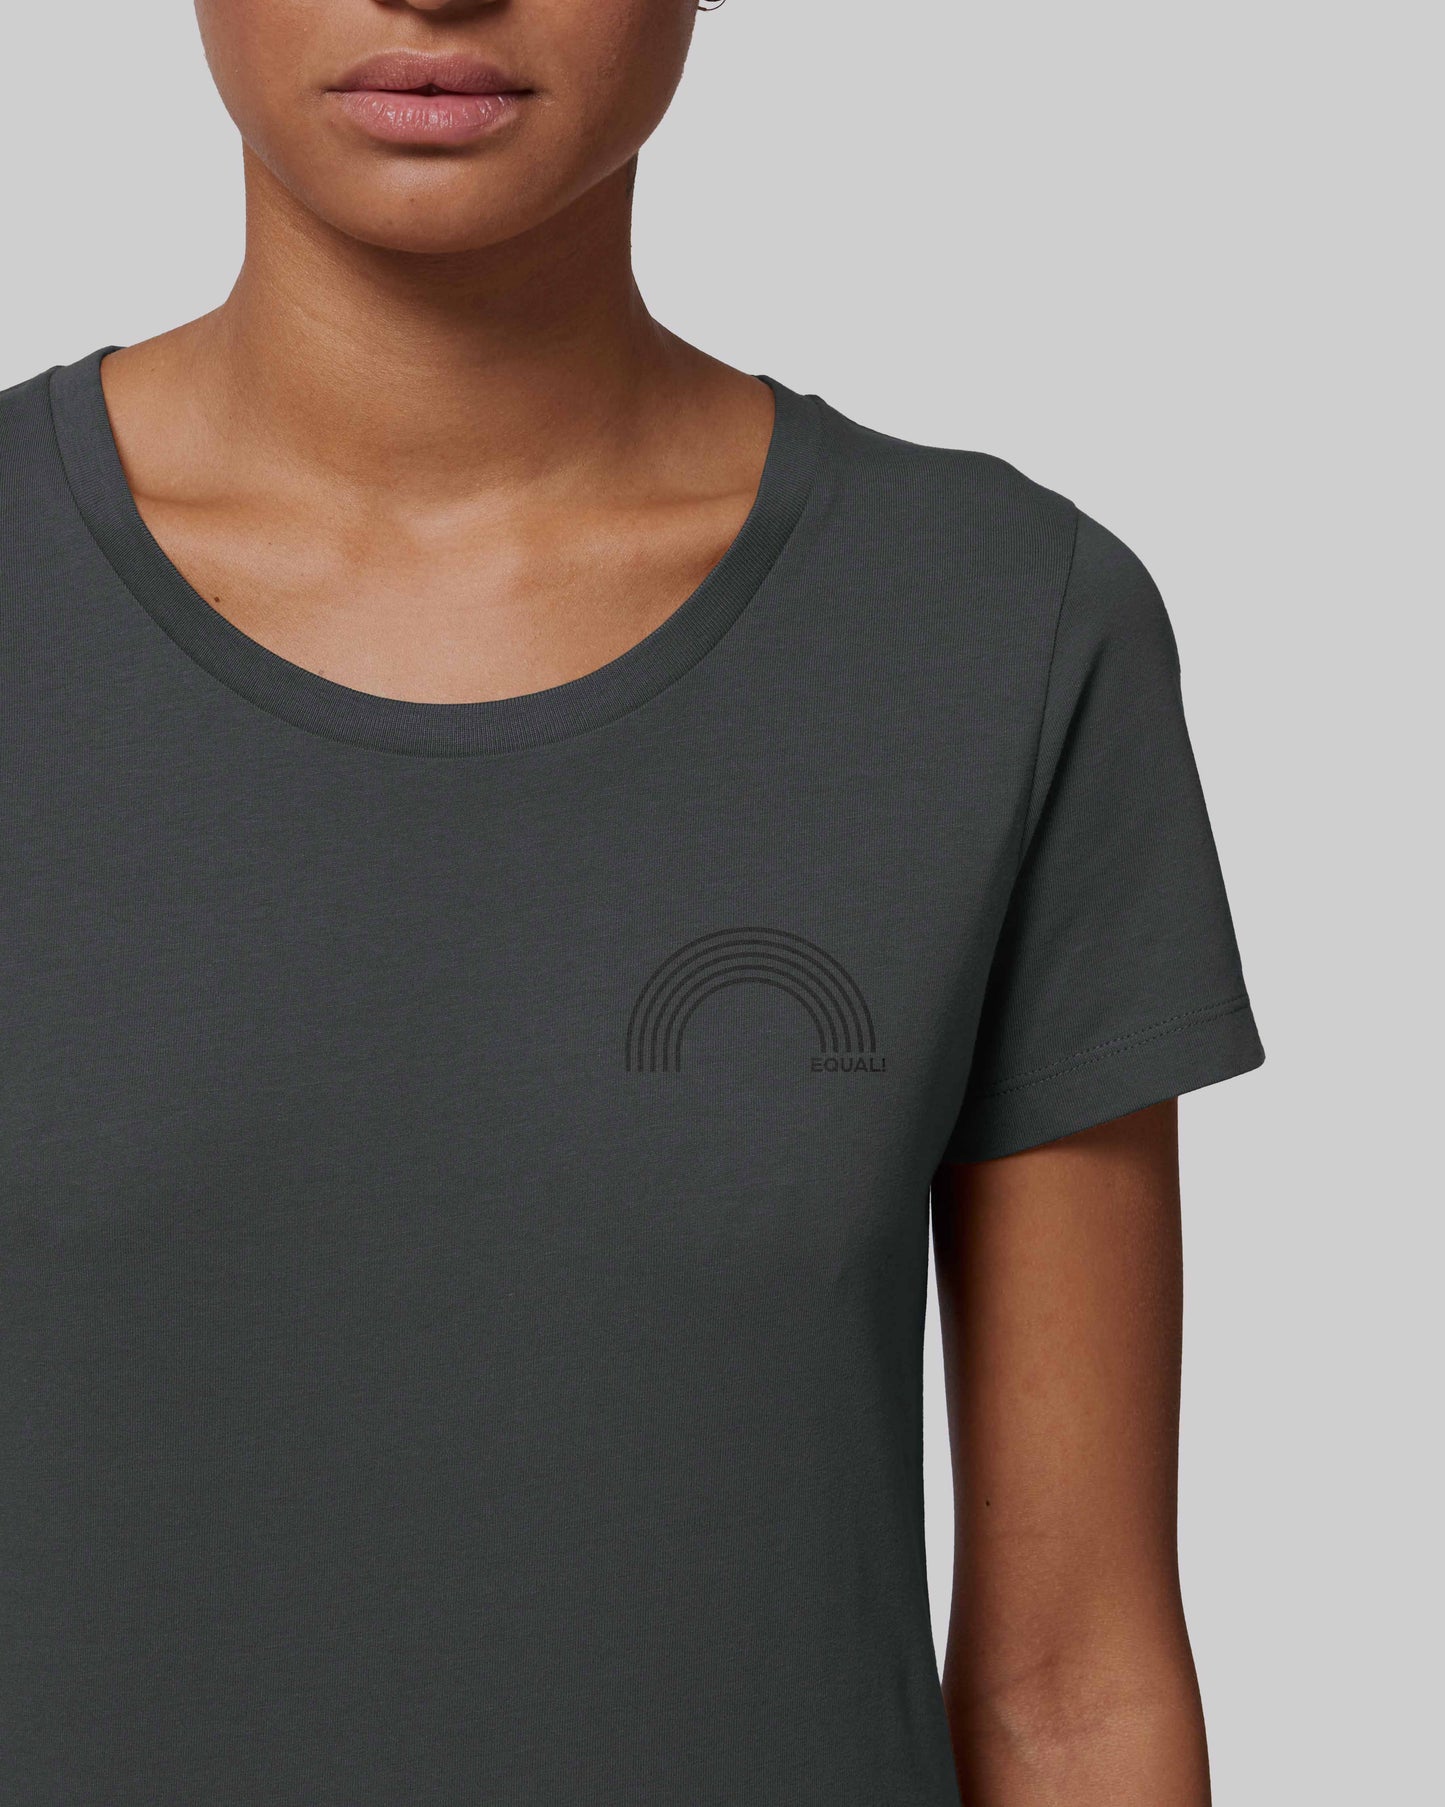 EINHORST® Organic Shirt tailliert in "Anthracite" mit dem Motiv "equal Regenbogen" in der Kombination schwarzer Regenbogen mit schwarzer Schrift, Bild von weiblicher Person mit Shirt